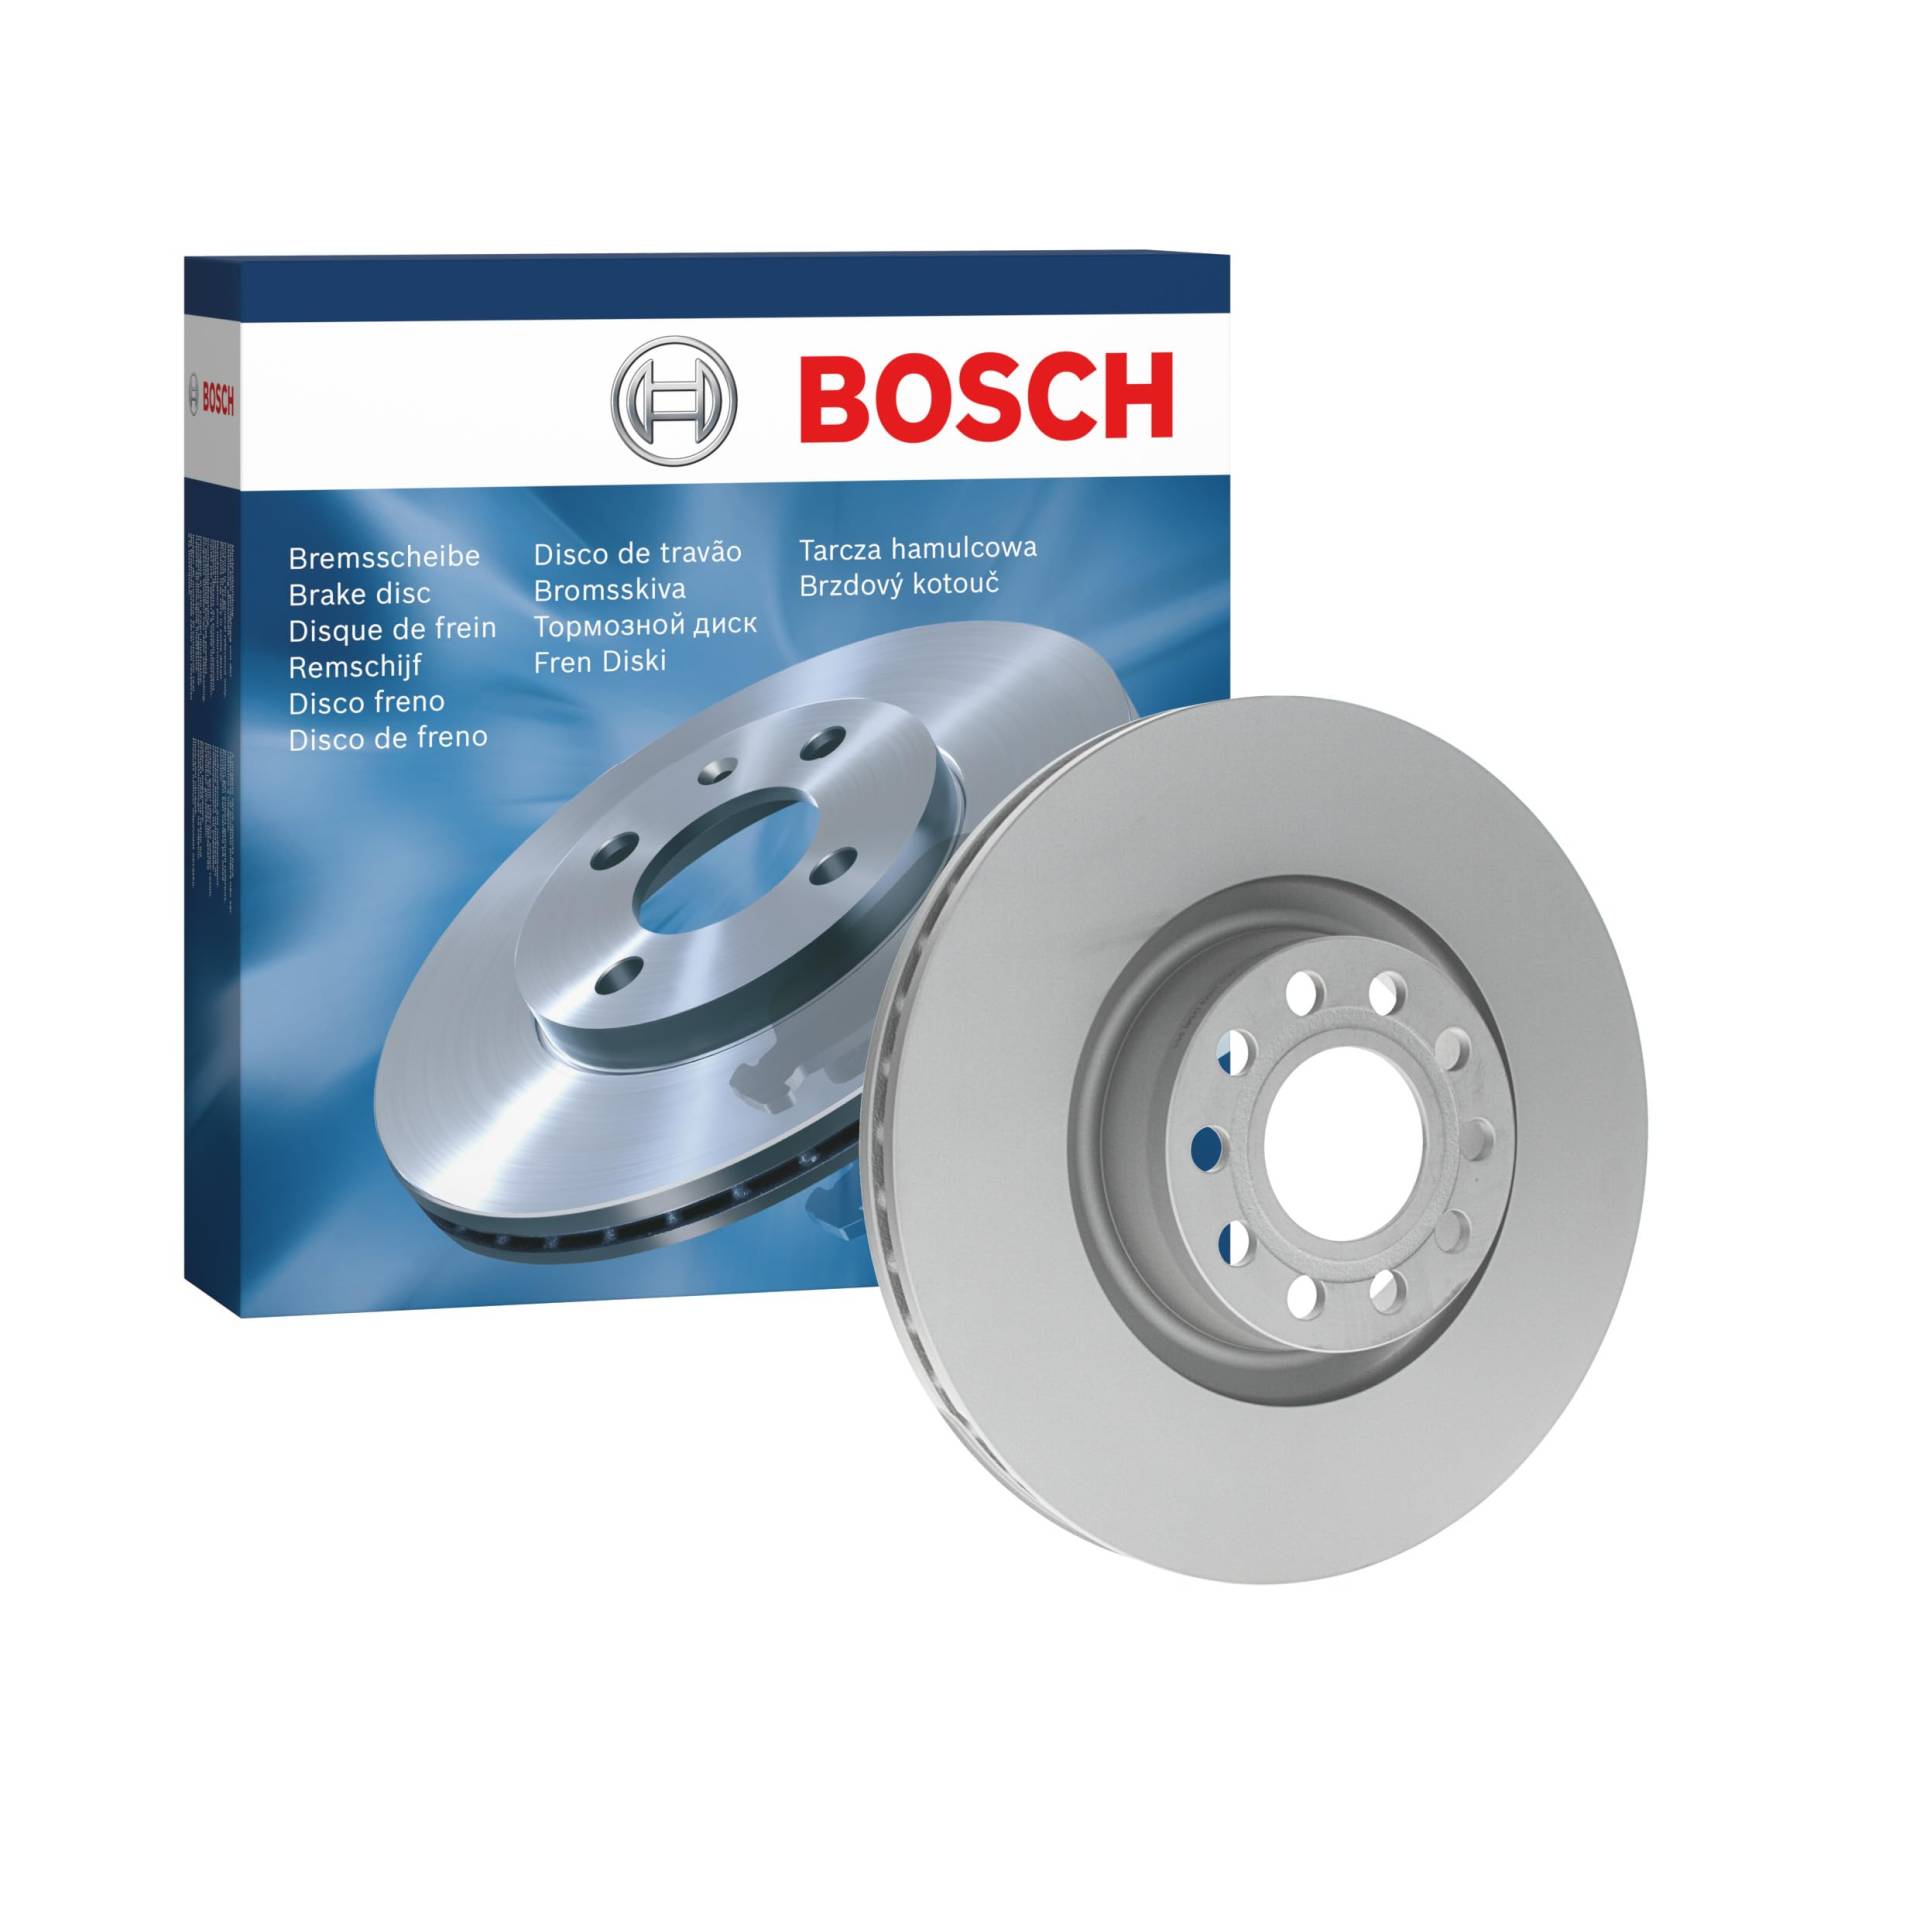 Bosch BD998 Bremsscheiben - Vorderachse - ECE-R90 Zertifizierung - eine Bremsscheibe von Bosch Automotive